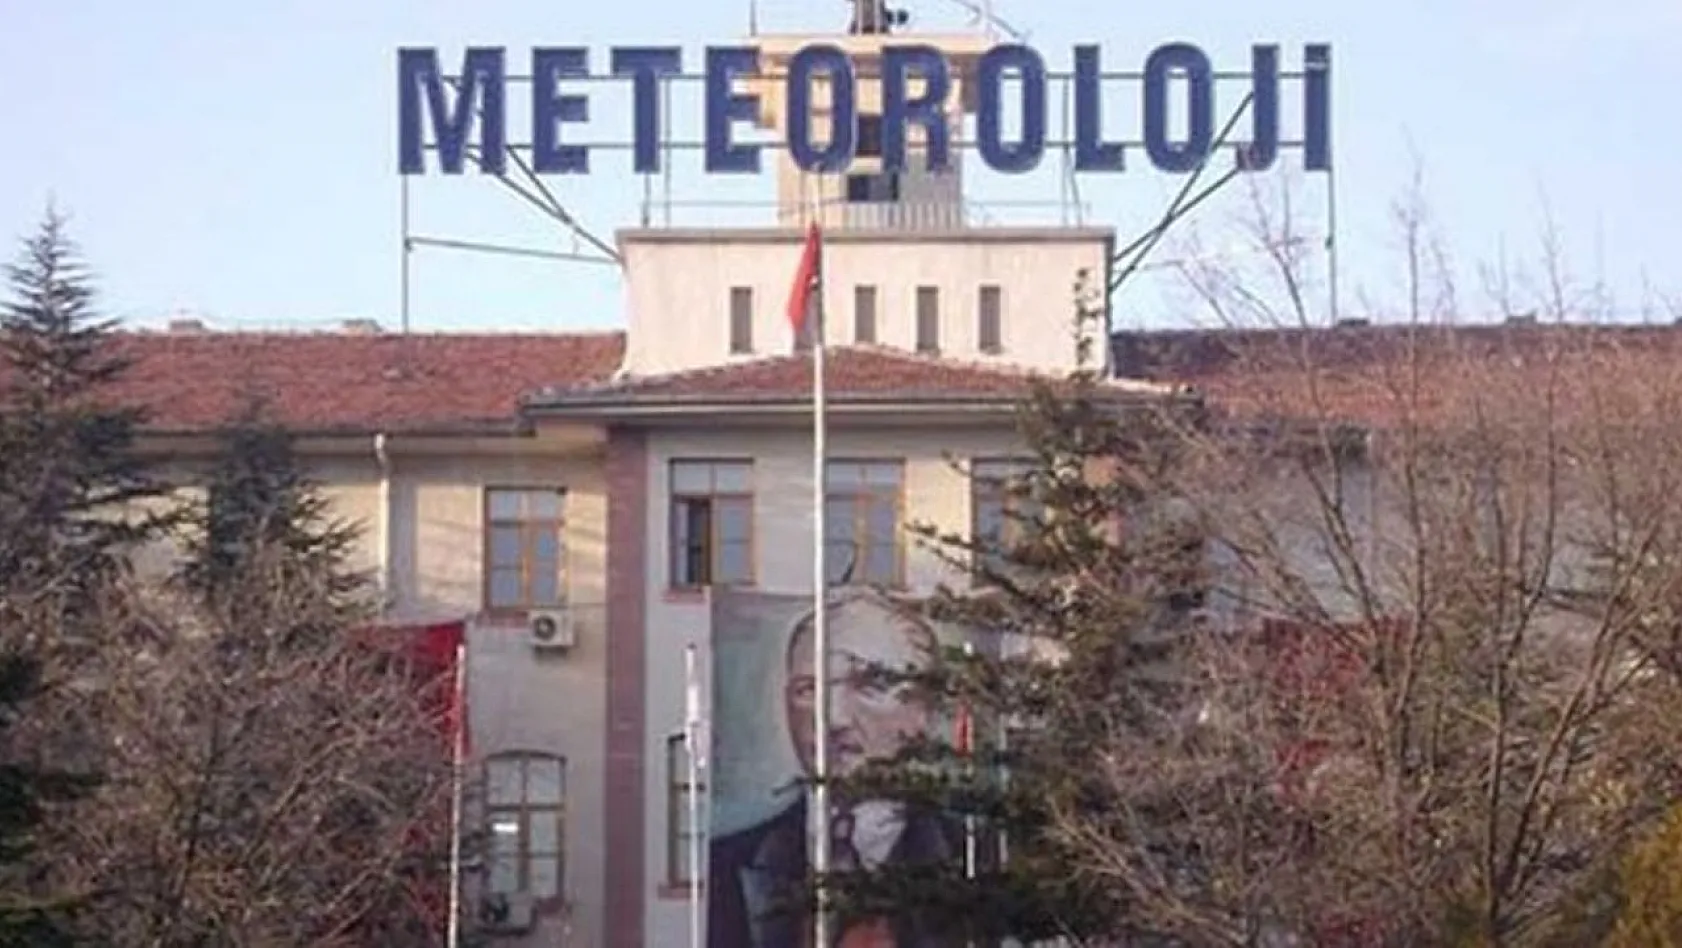 Meteoroloji Genel Müdürlüğü, Elazığ'da Personel Alımı Yapacak